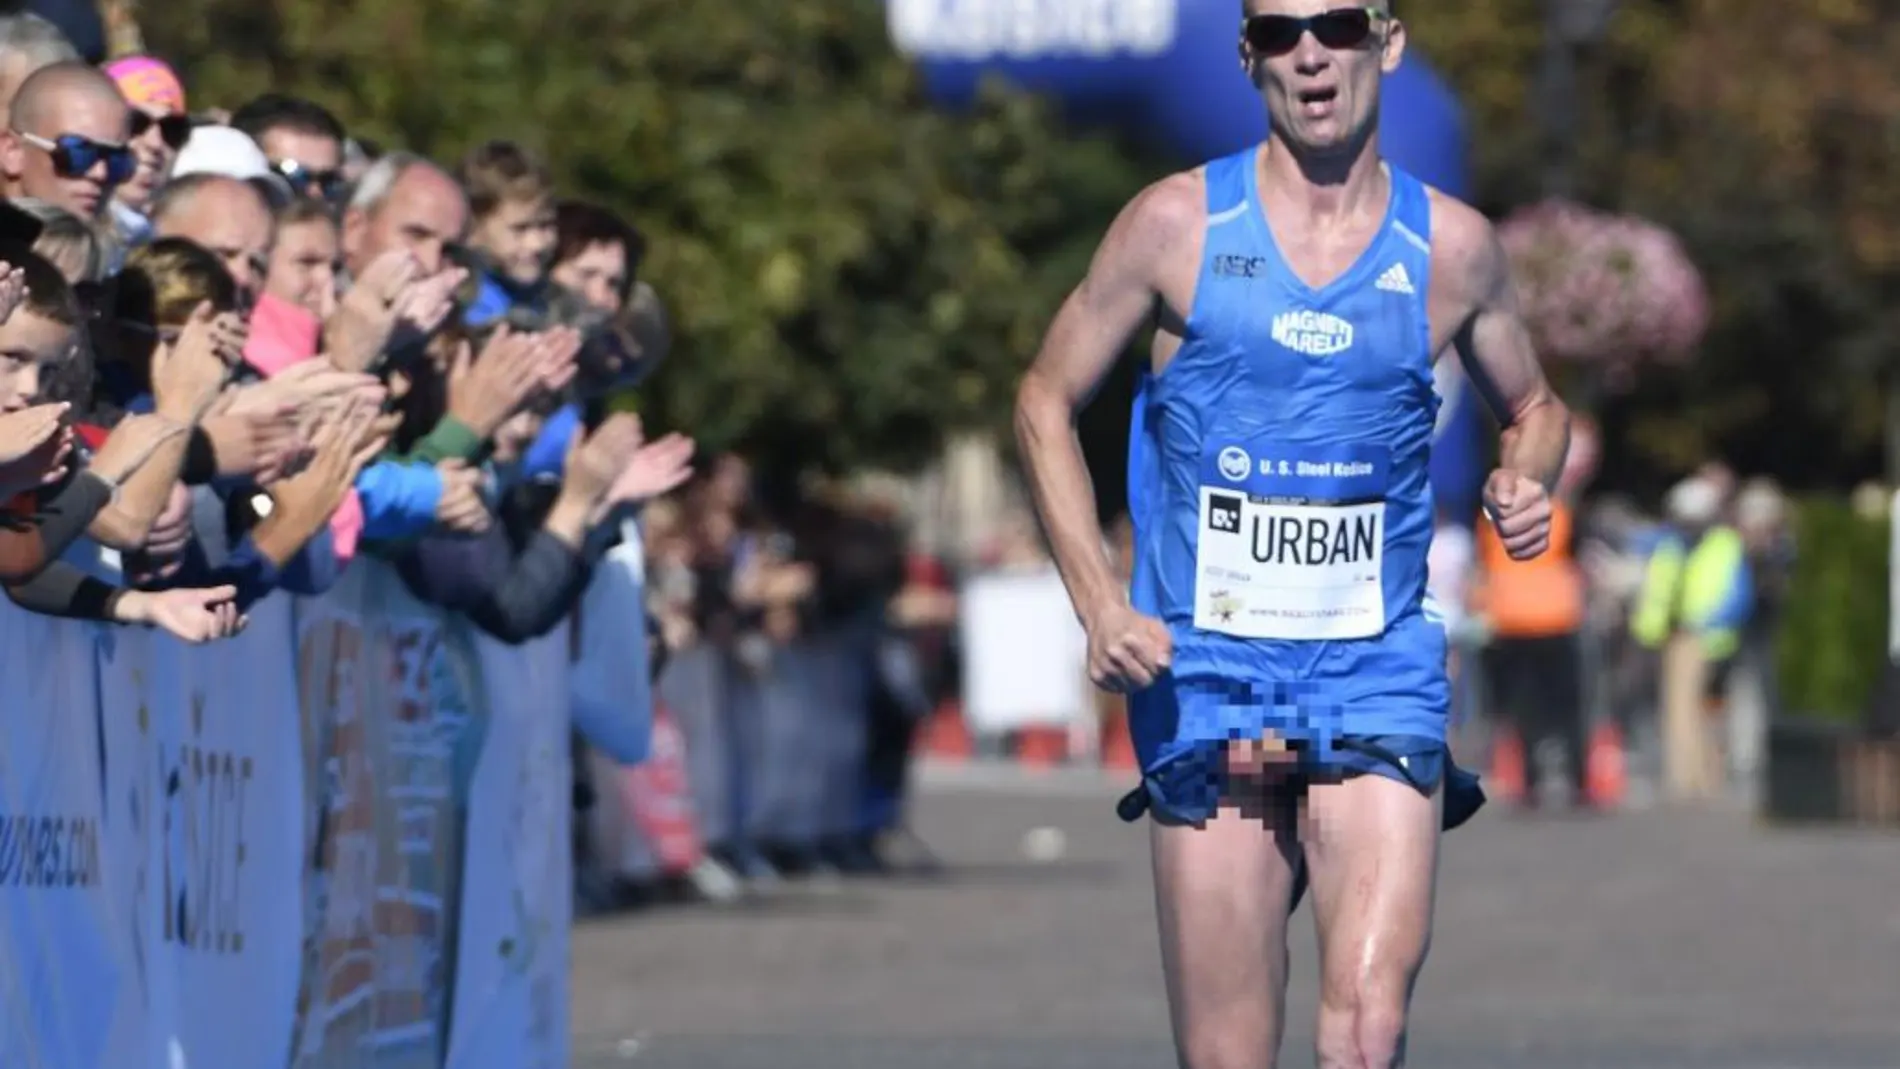 Un maratoniano deja al descubierto su pene mientras corre